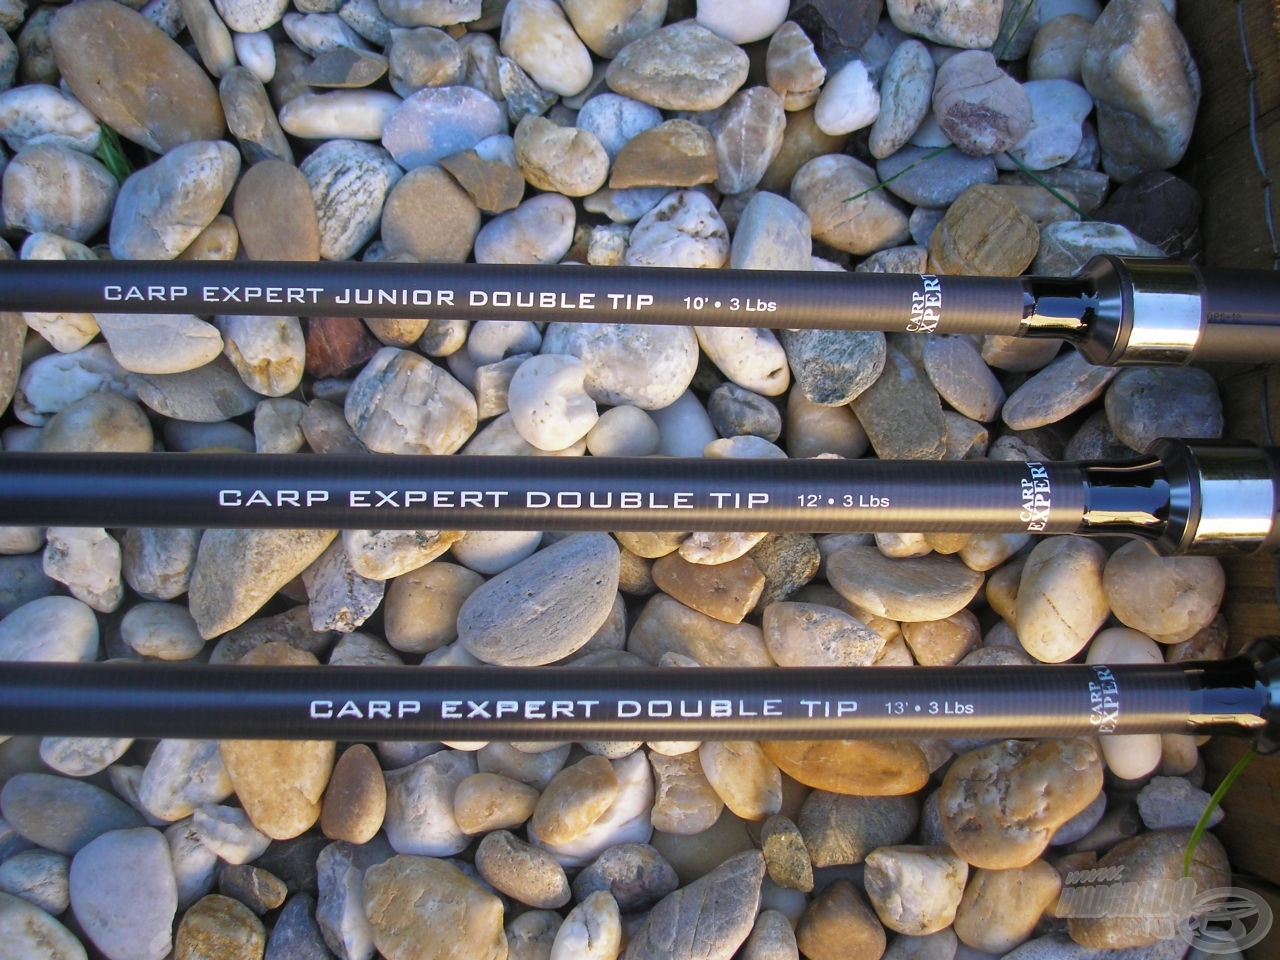 A Carp Expert Double Tip botok igazi kuriózumnak számítanak a pontyhorgászatban